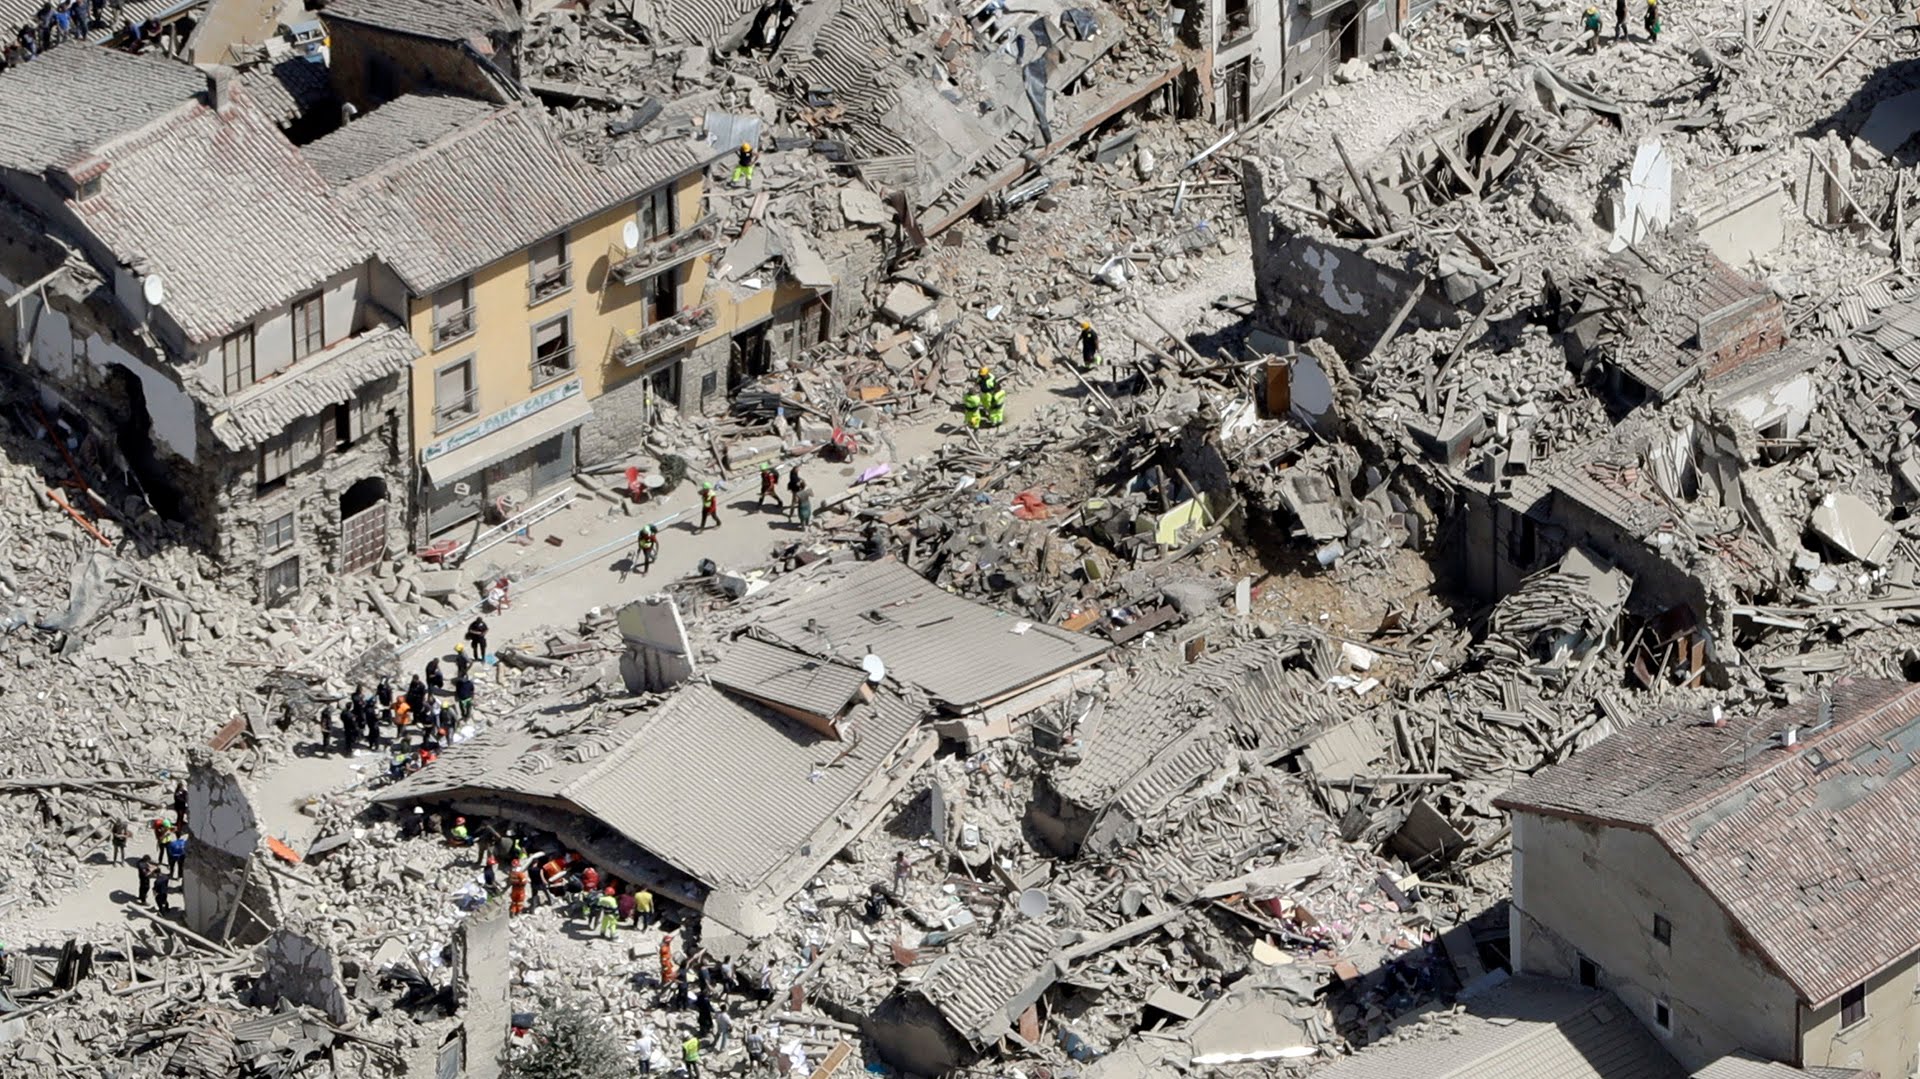  Vuelve el sismo a Italia: 6,5 en la escala de Richter este domingo